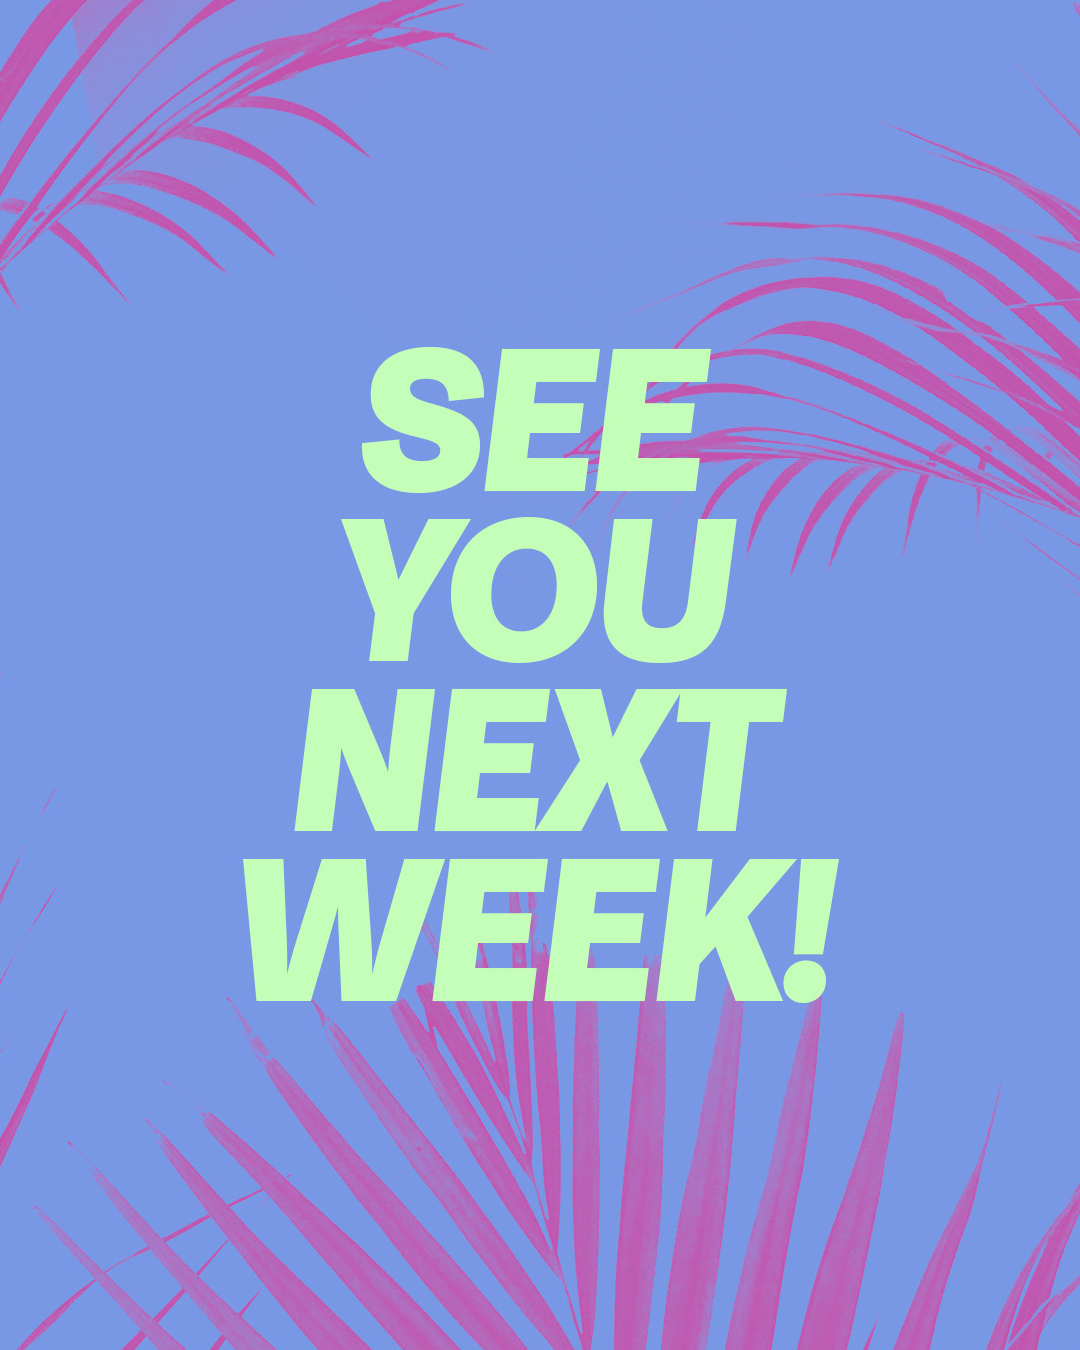 See you next week!